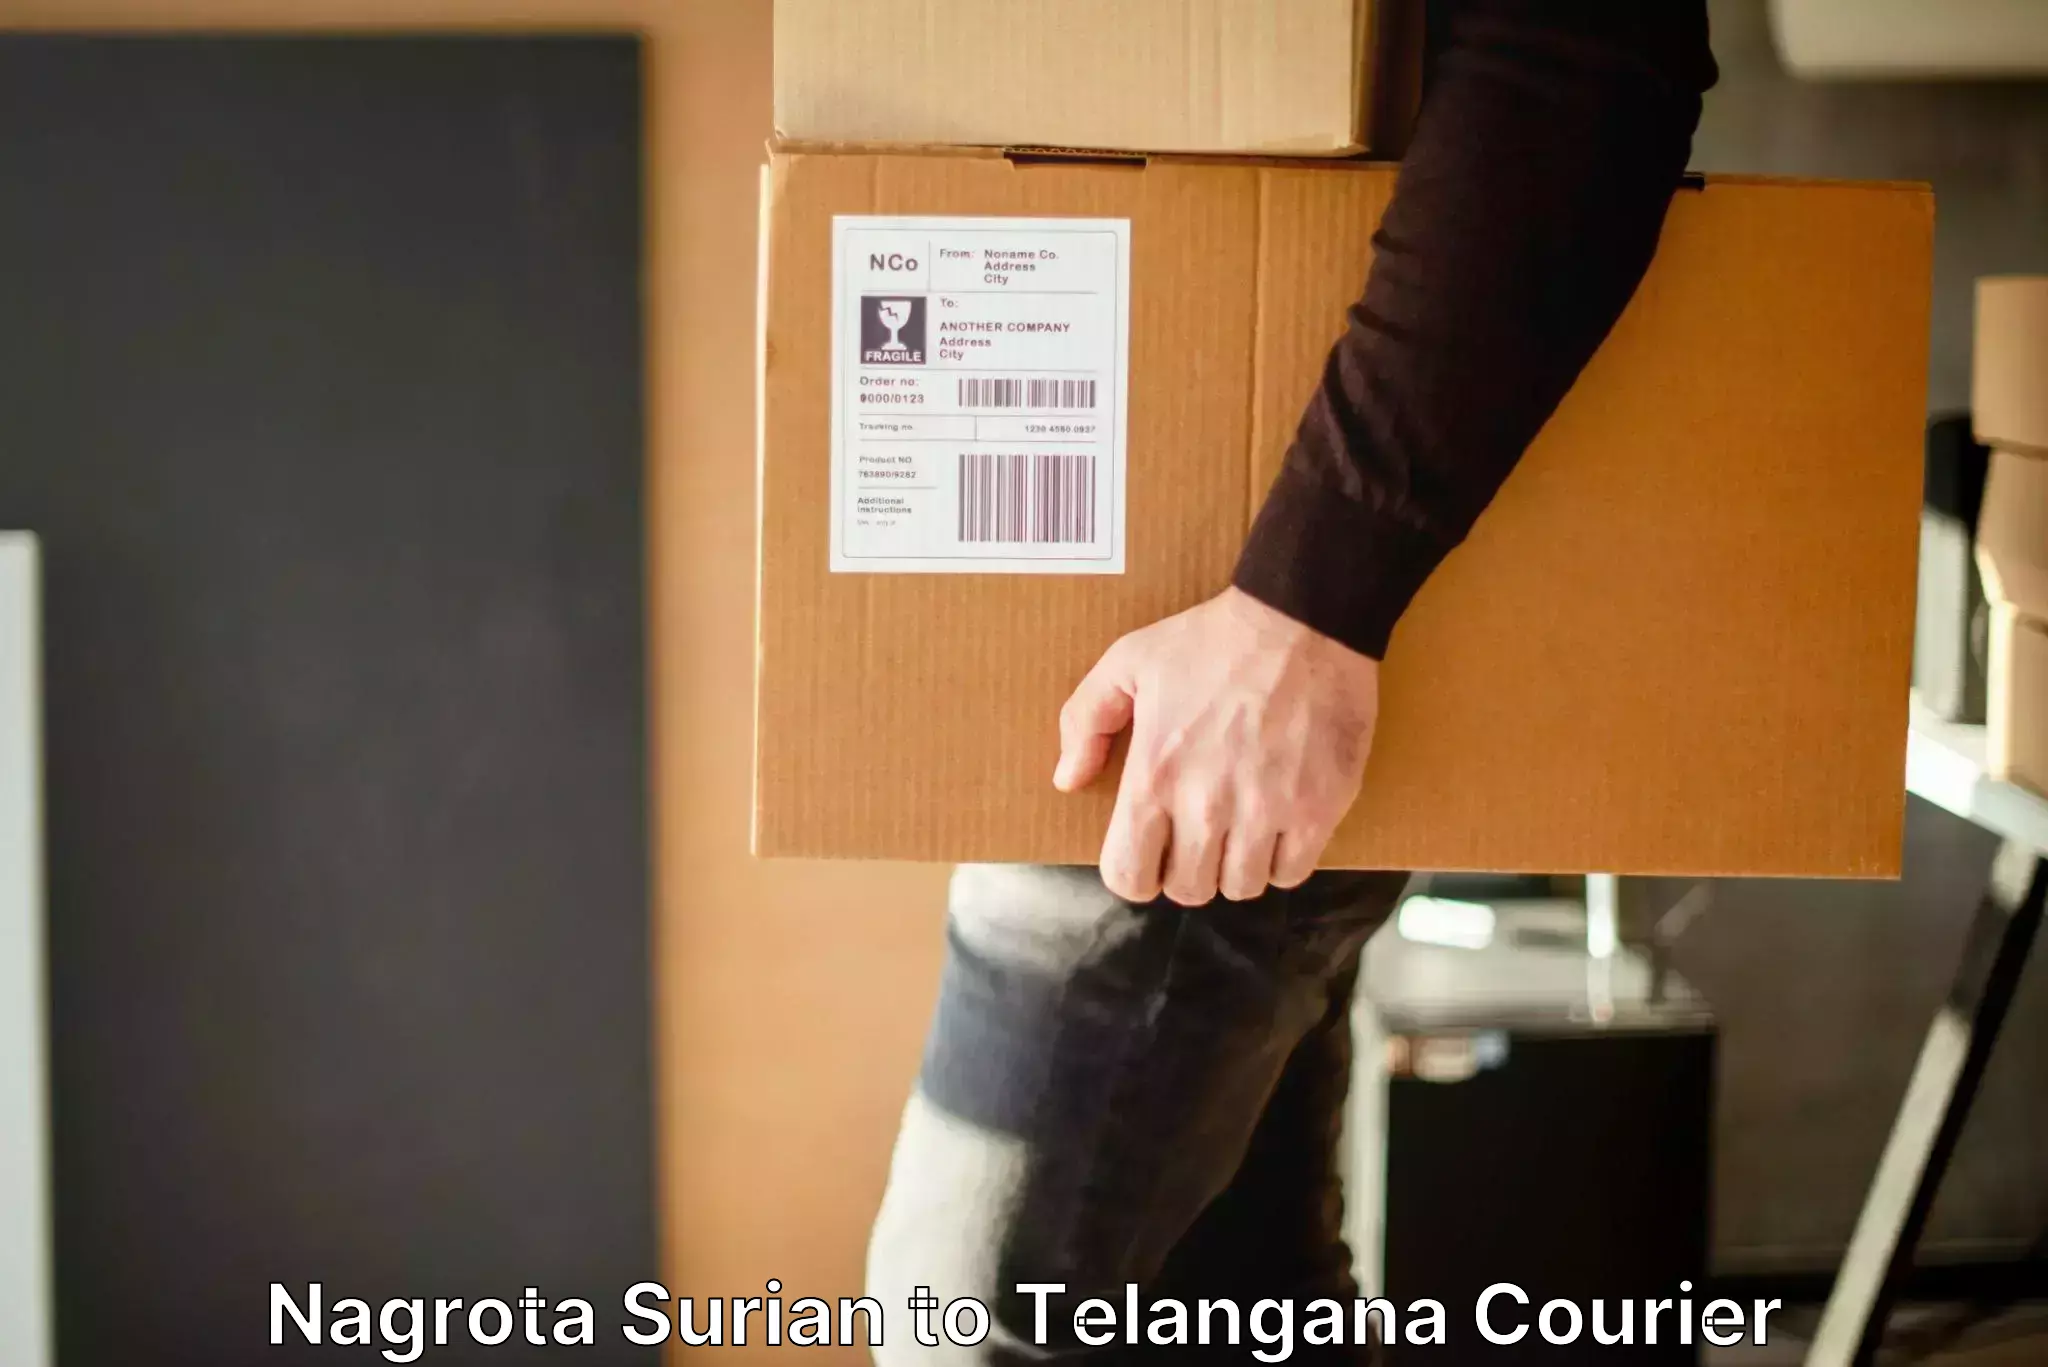 Baggage transport scheduler Nagrota Surian to Rudrangi